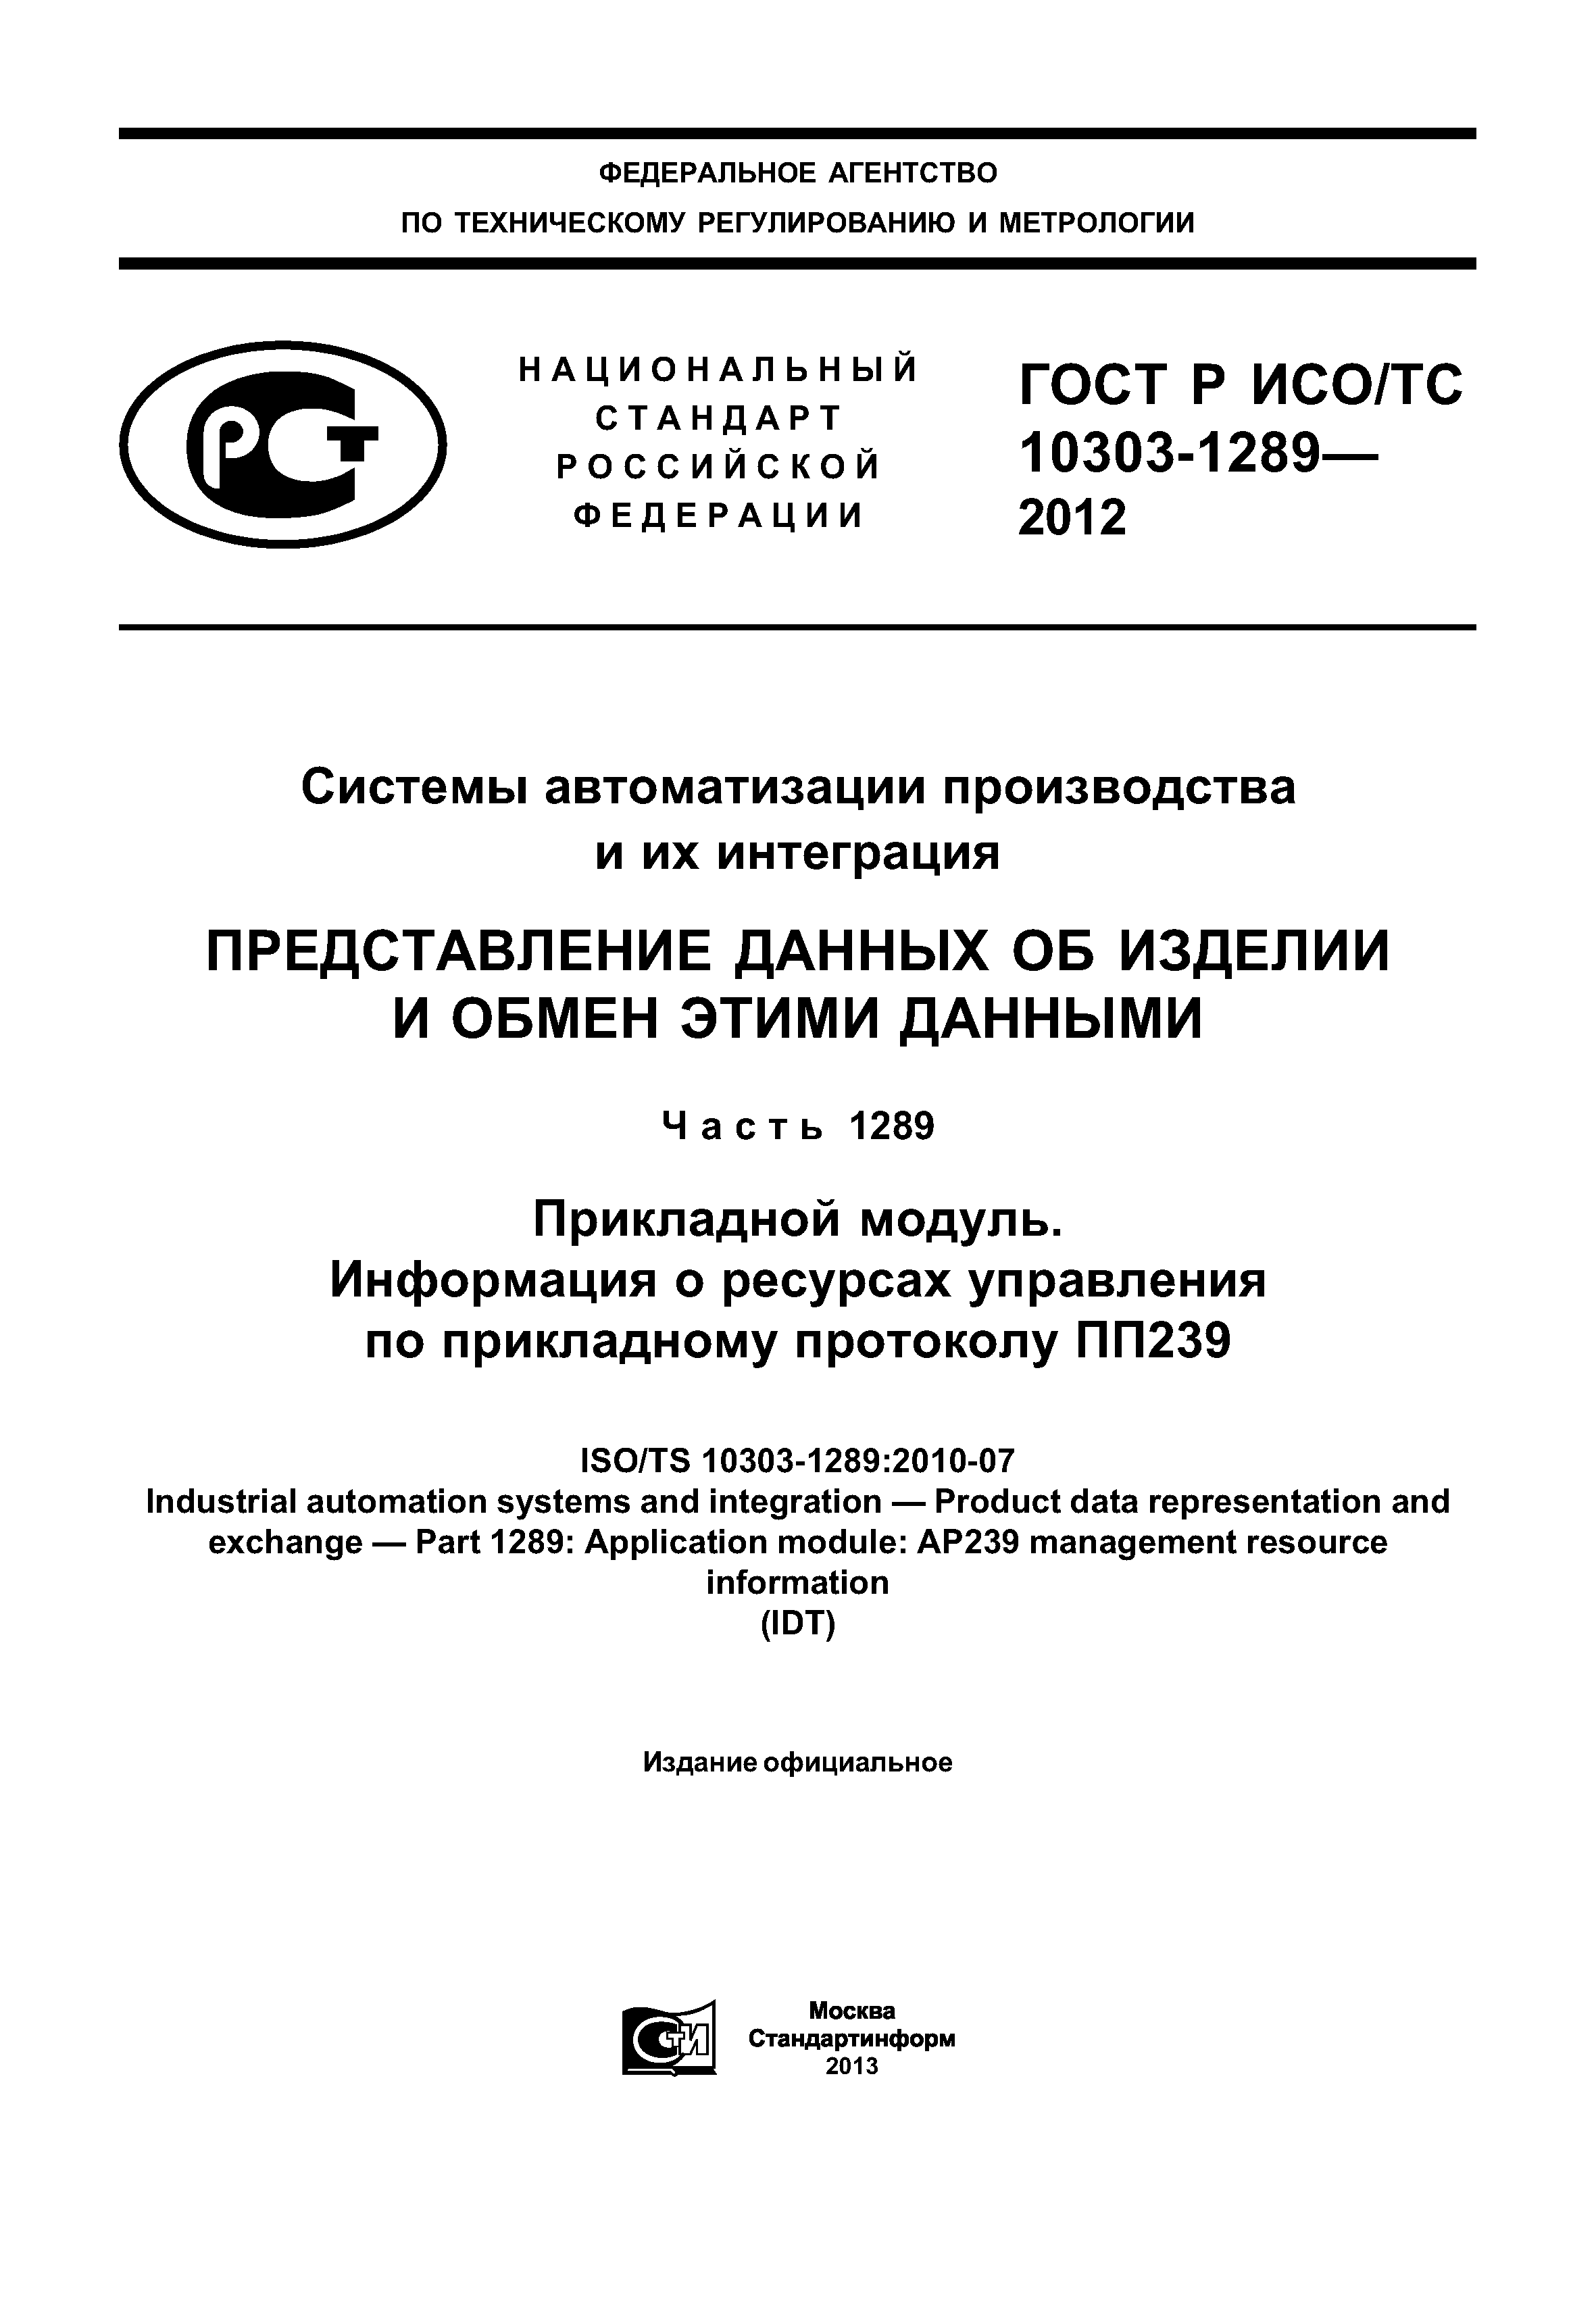 ГОСТ Р ИСО/ТС 10303-1289-2012